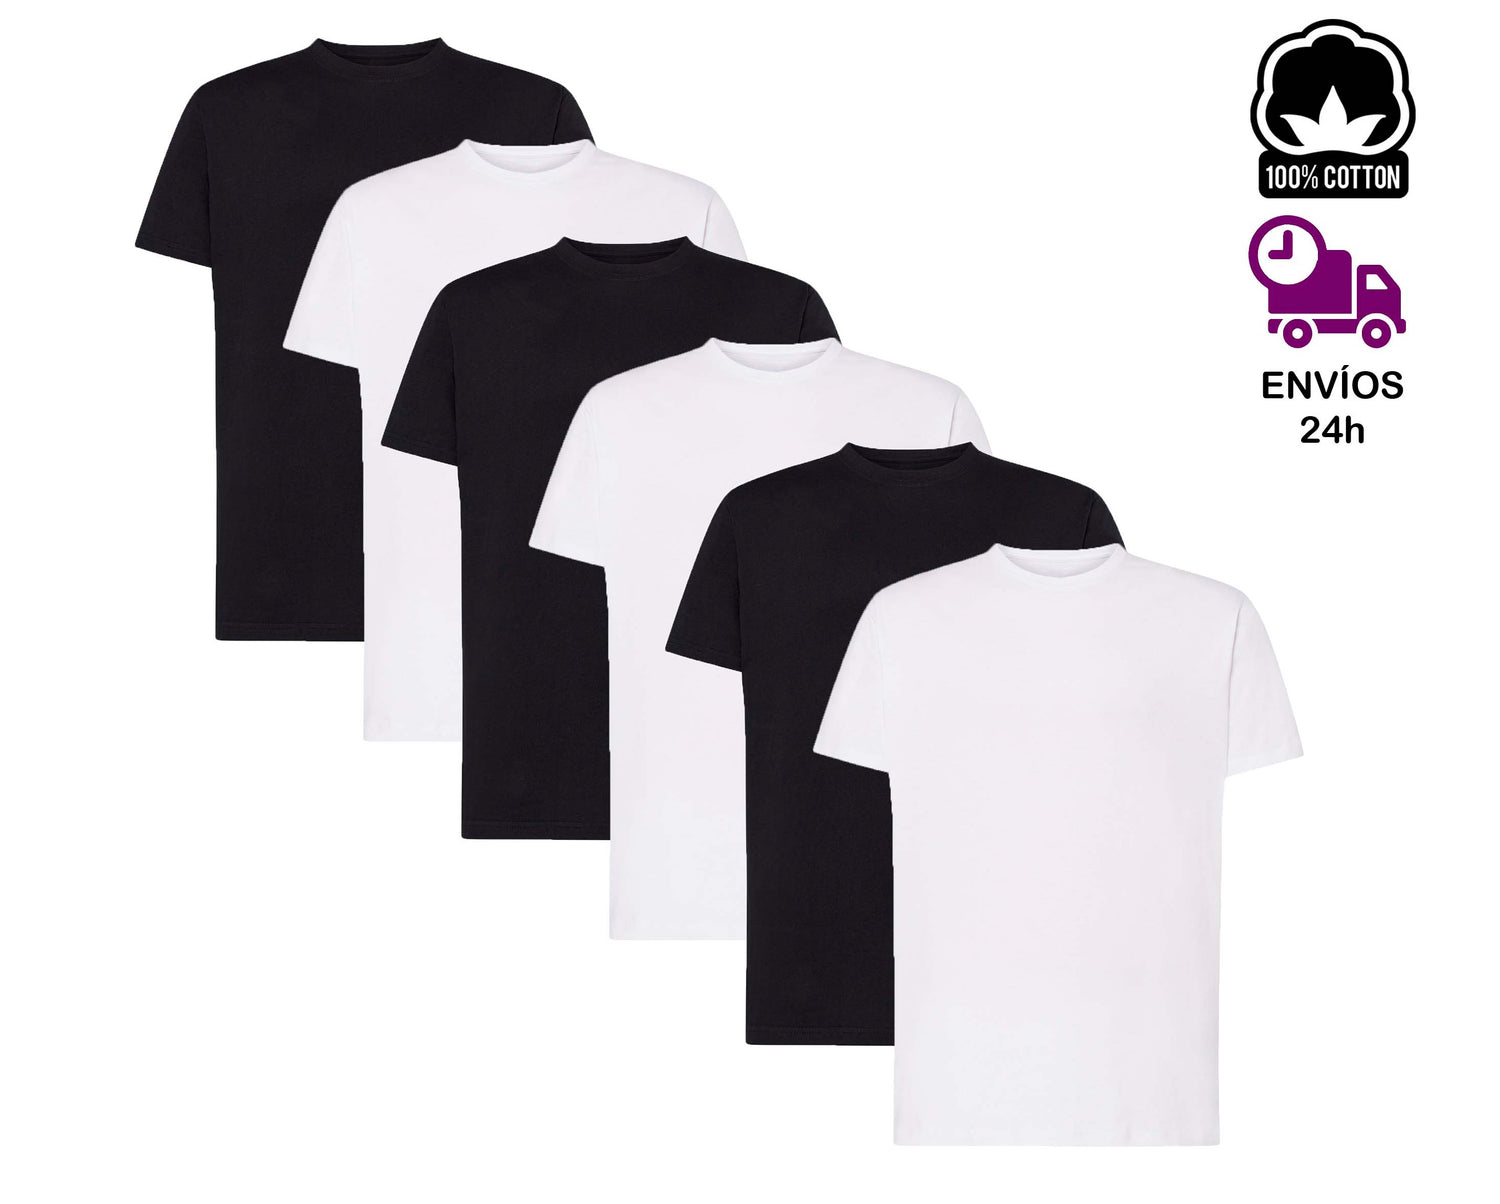 Camiseta básica de algodón pesado para hombre, 6.2 onzas, manga corta,  cuello en V, lisa, talla regular grande y alta